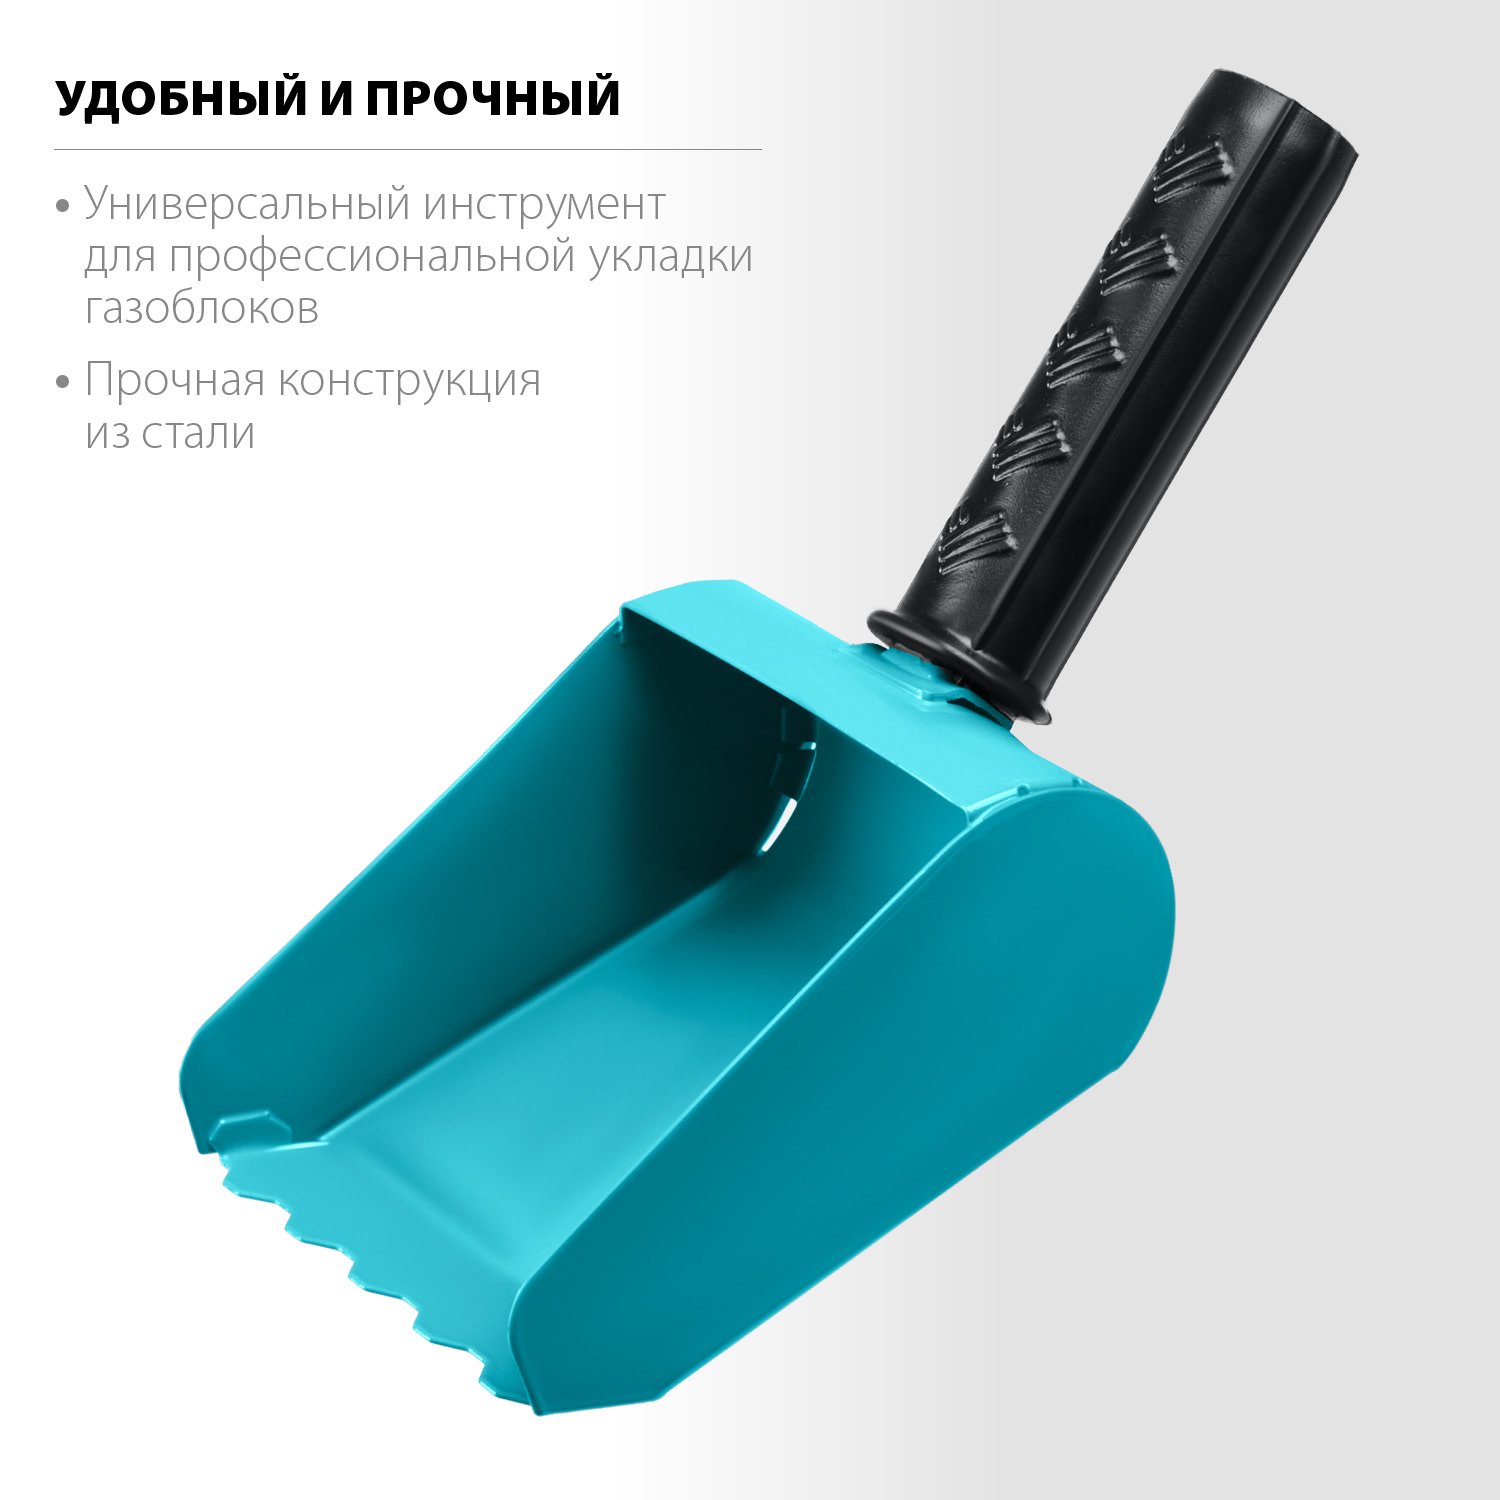 Строительная кельма-ковш СИБИН 100 мм, резиновая рукоятка, 270 мм, сталь 1,3 мм (08240-10)